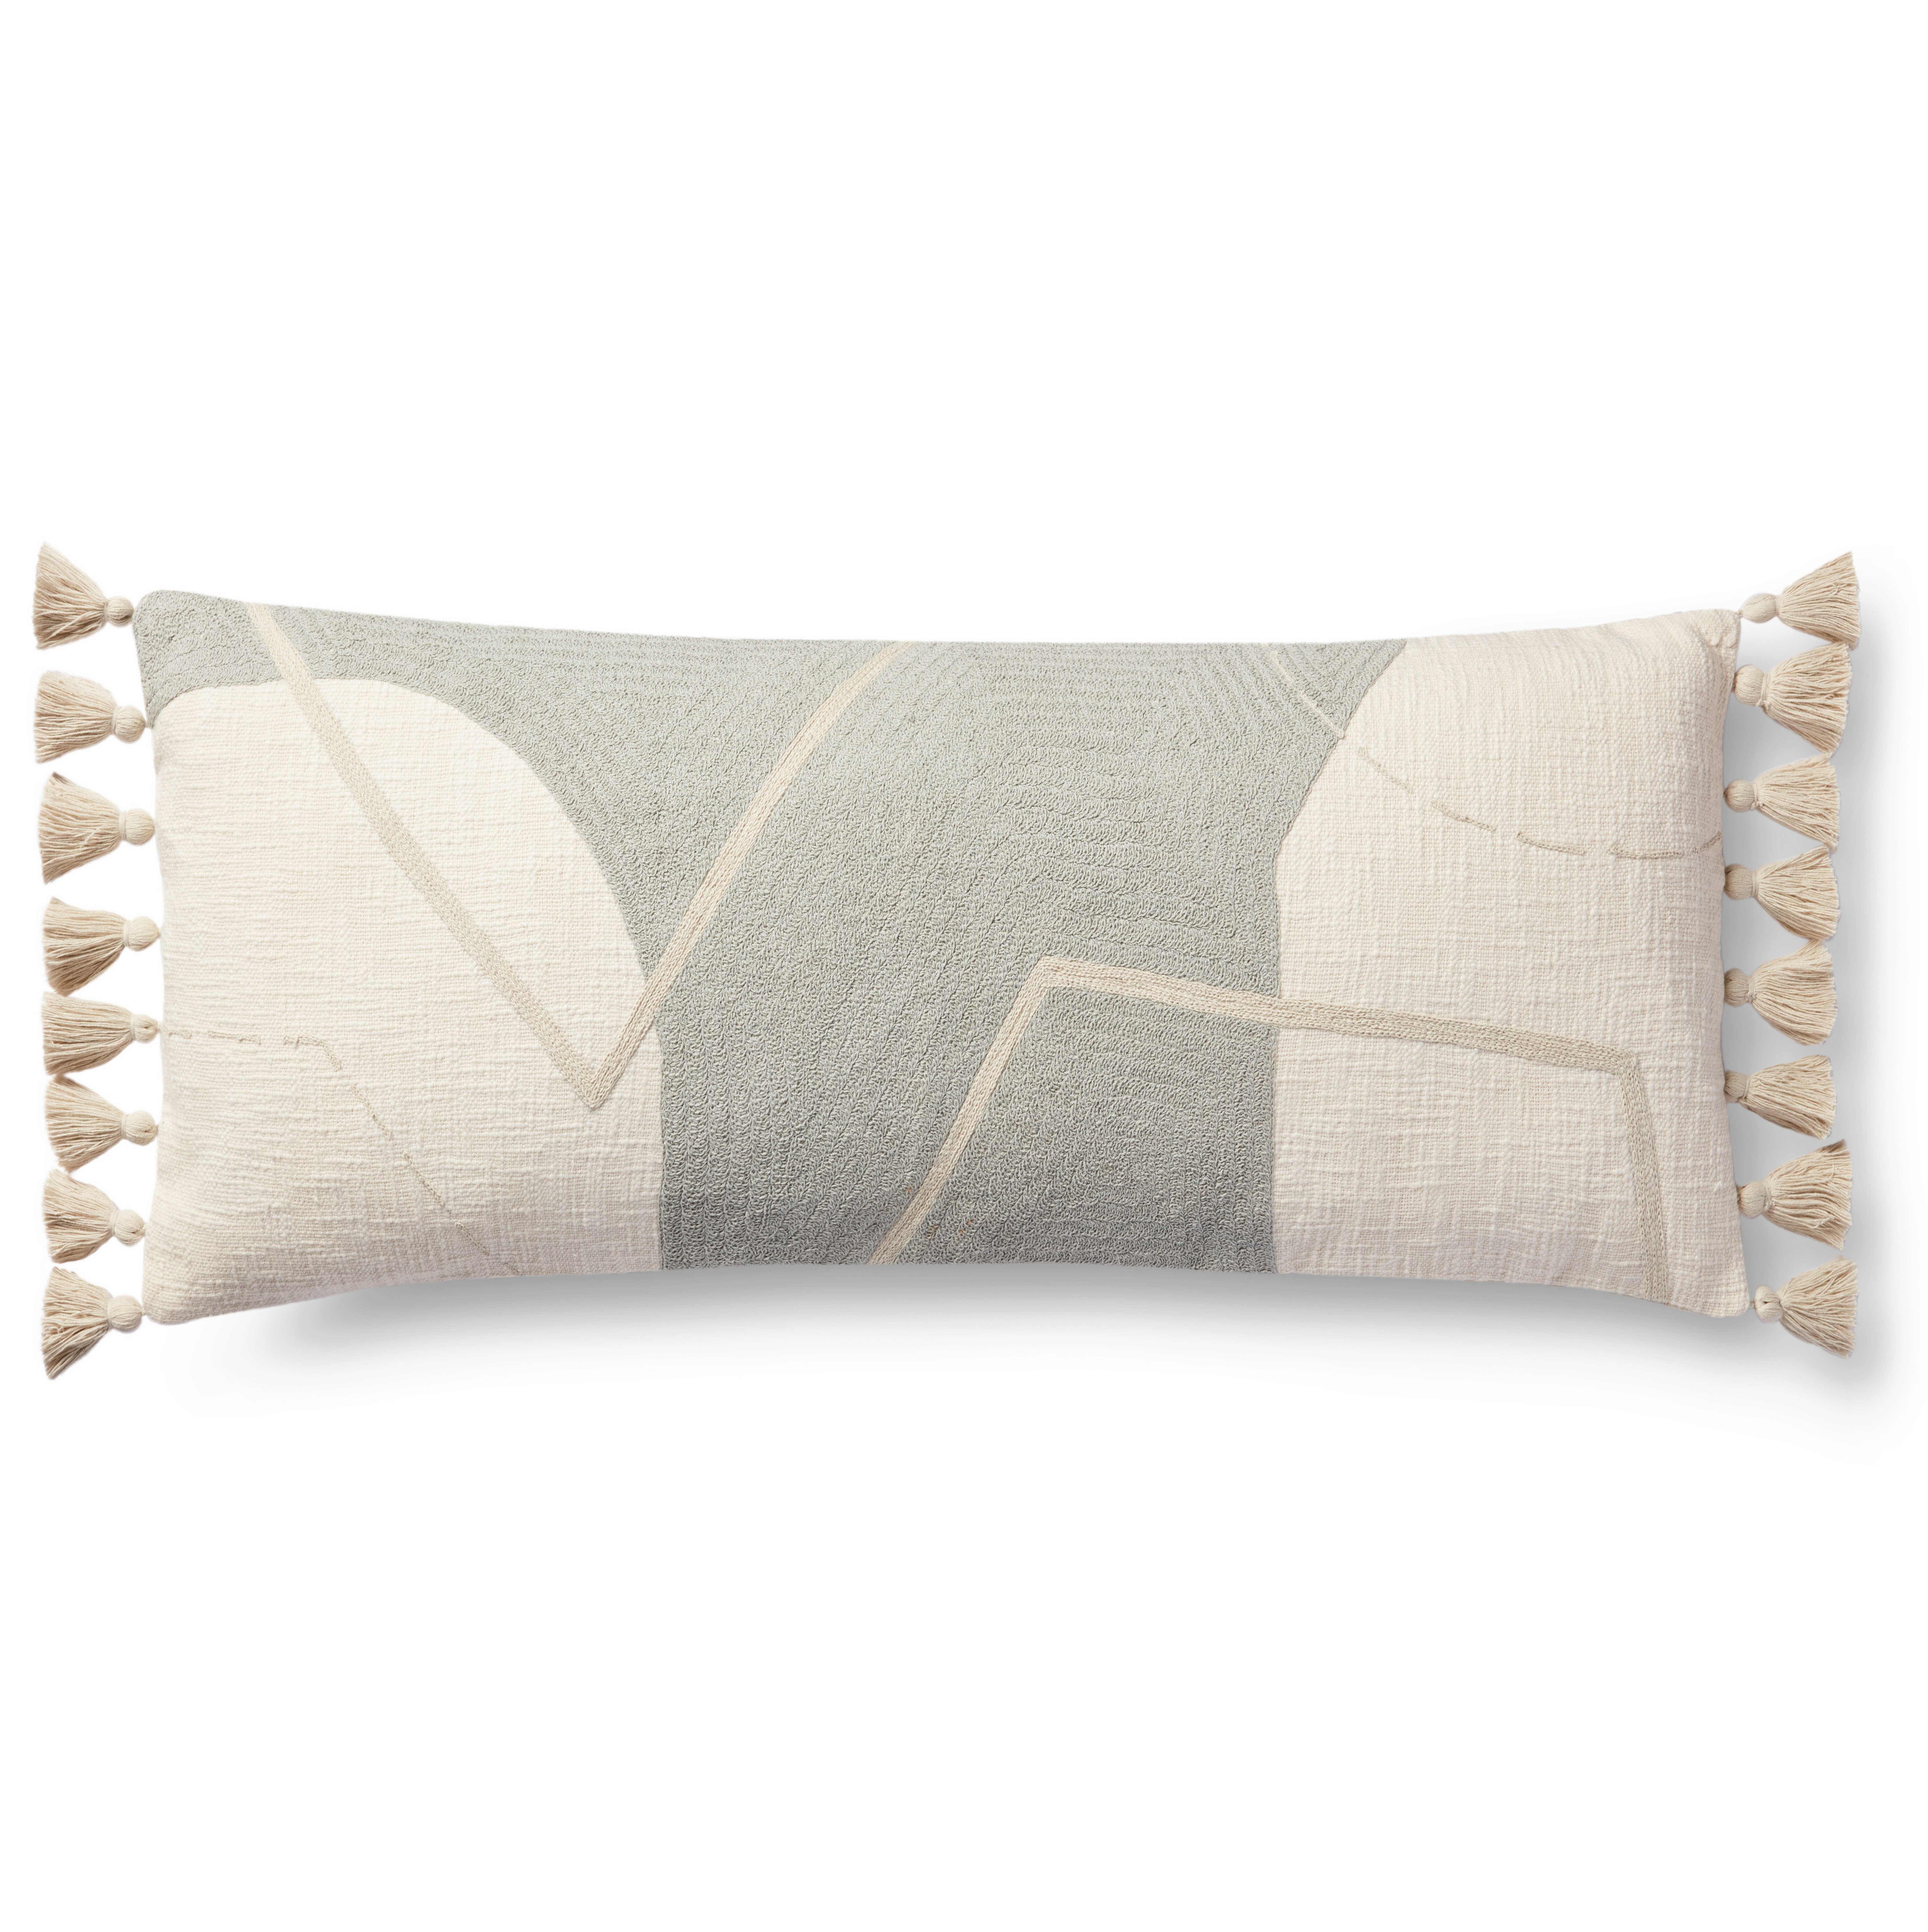 Holland Lumbar Pillow, 35" x 13" - Haldin